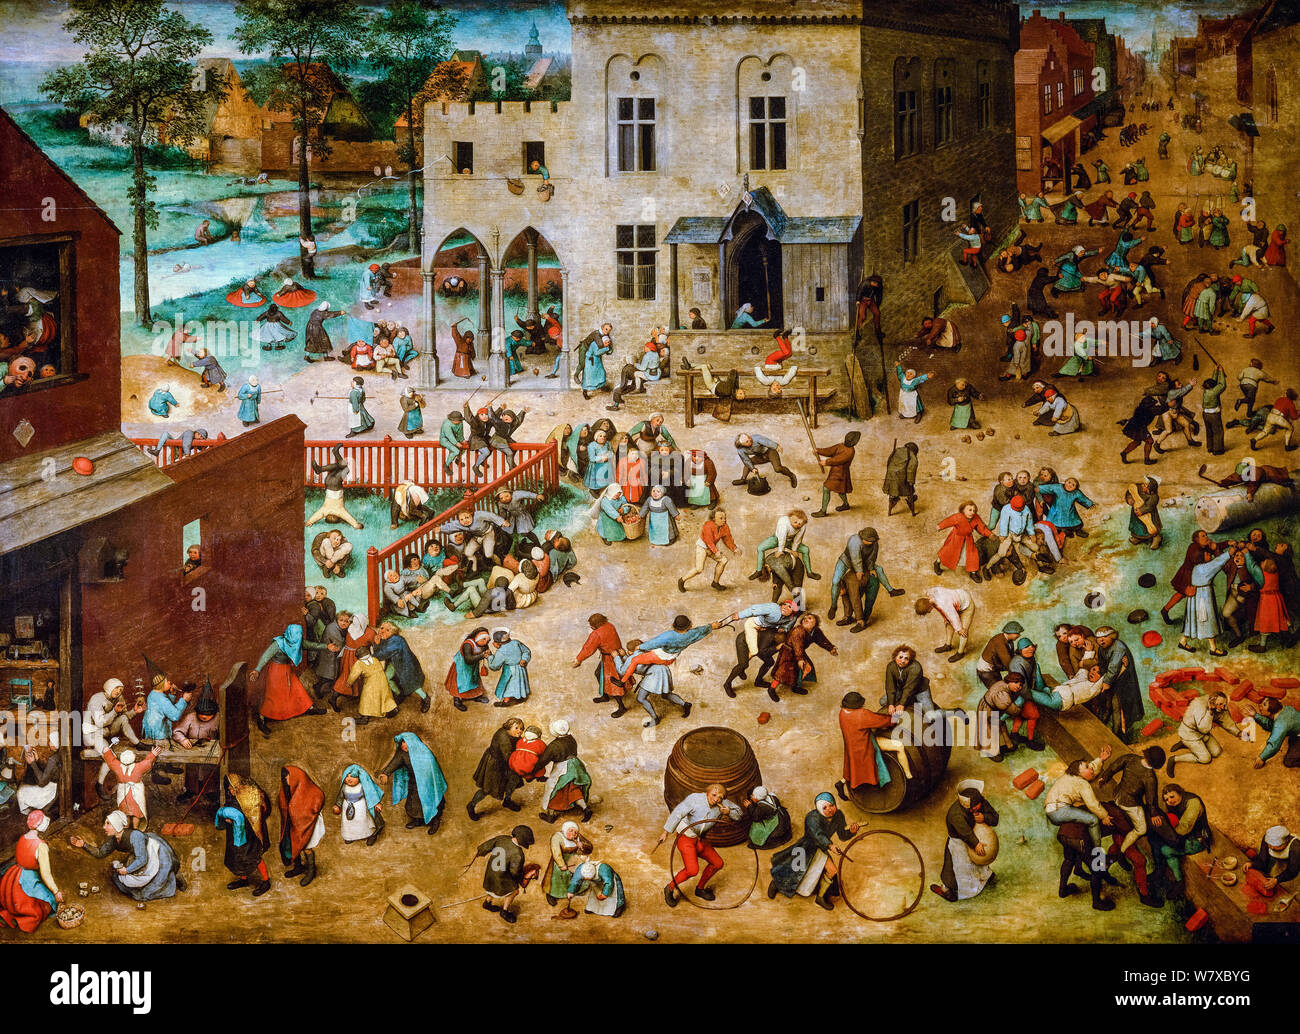 Pieter Bruegel The Elder, peinture de la Renaissance, Jeux pour enfants, 1560 Banque D'Images